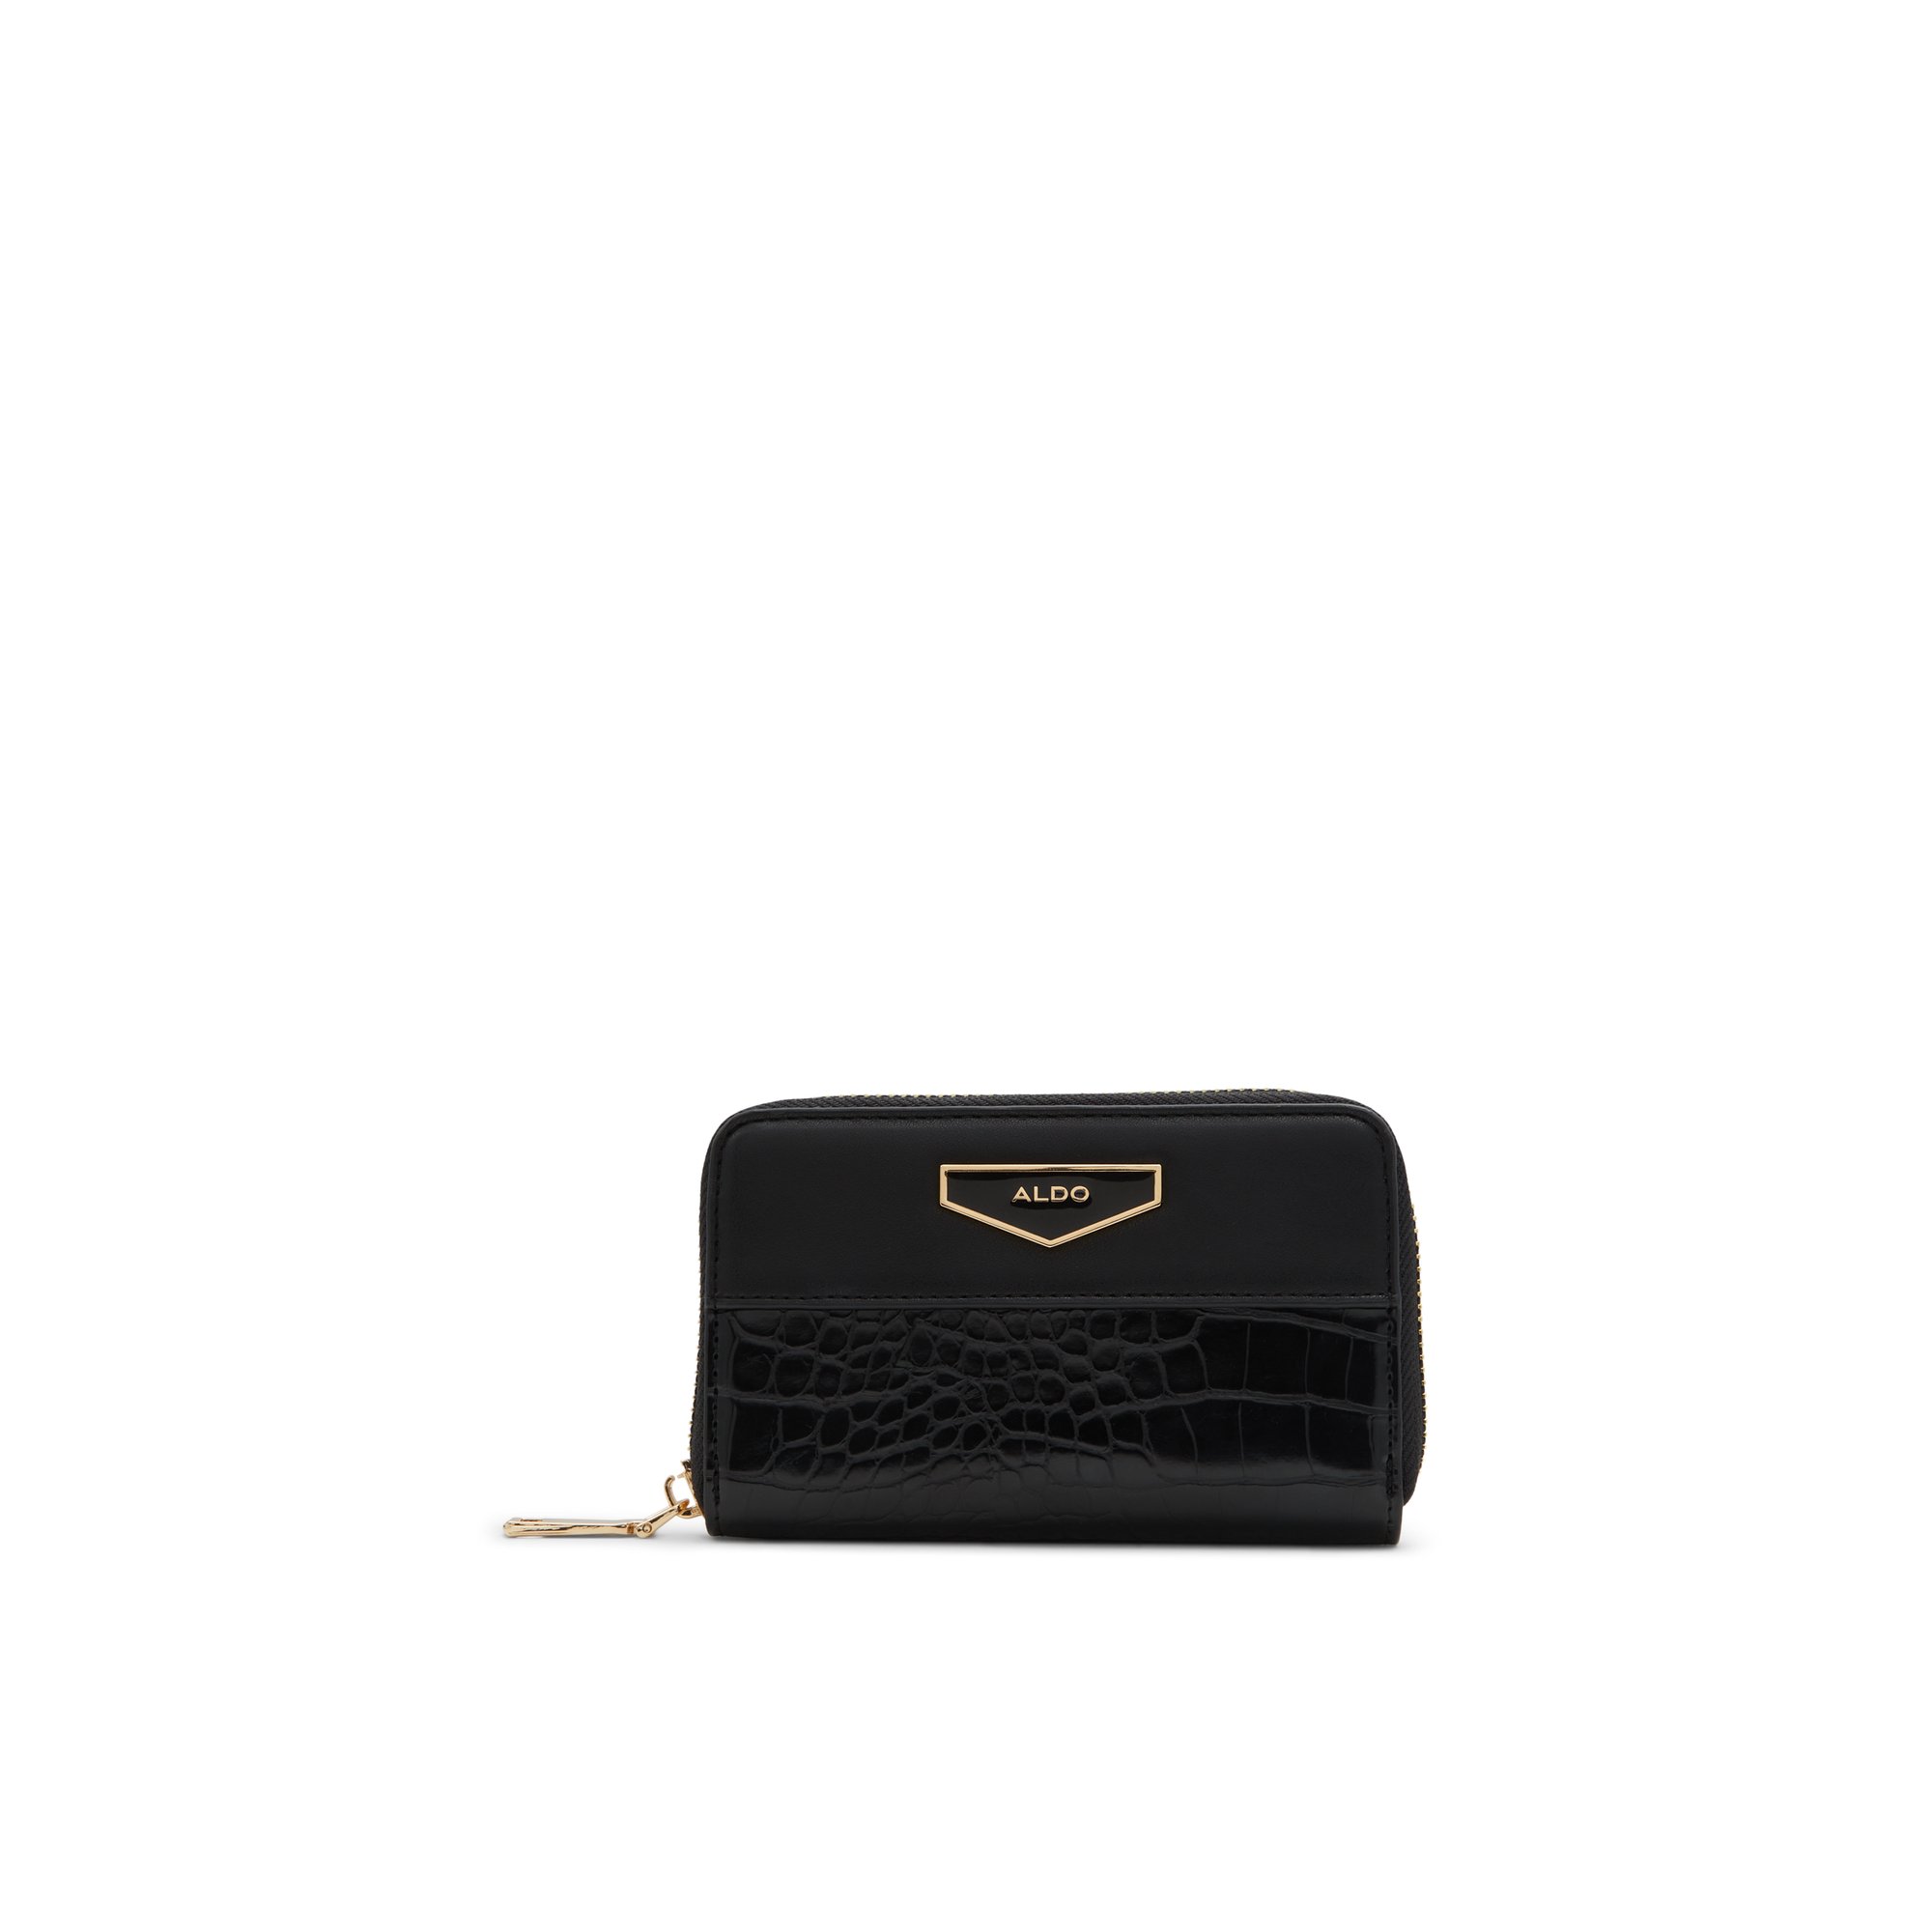 ALDO Alalendra - Women's Wallet Handbag - Black